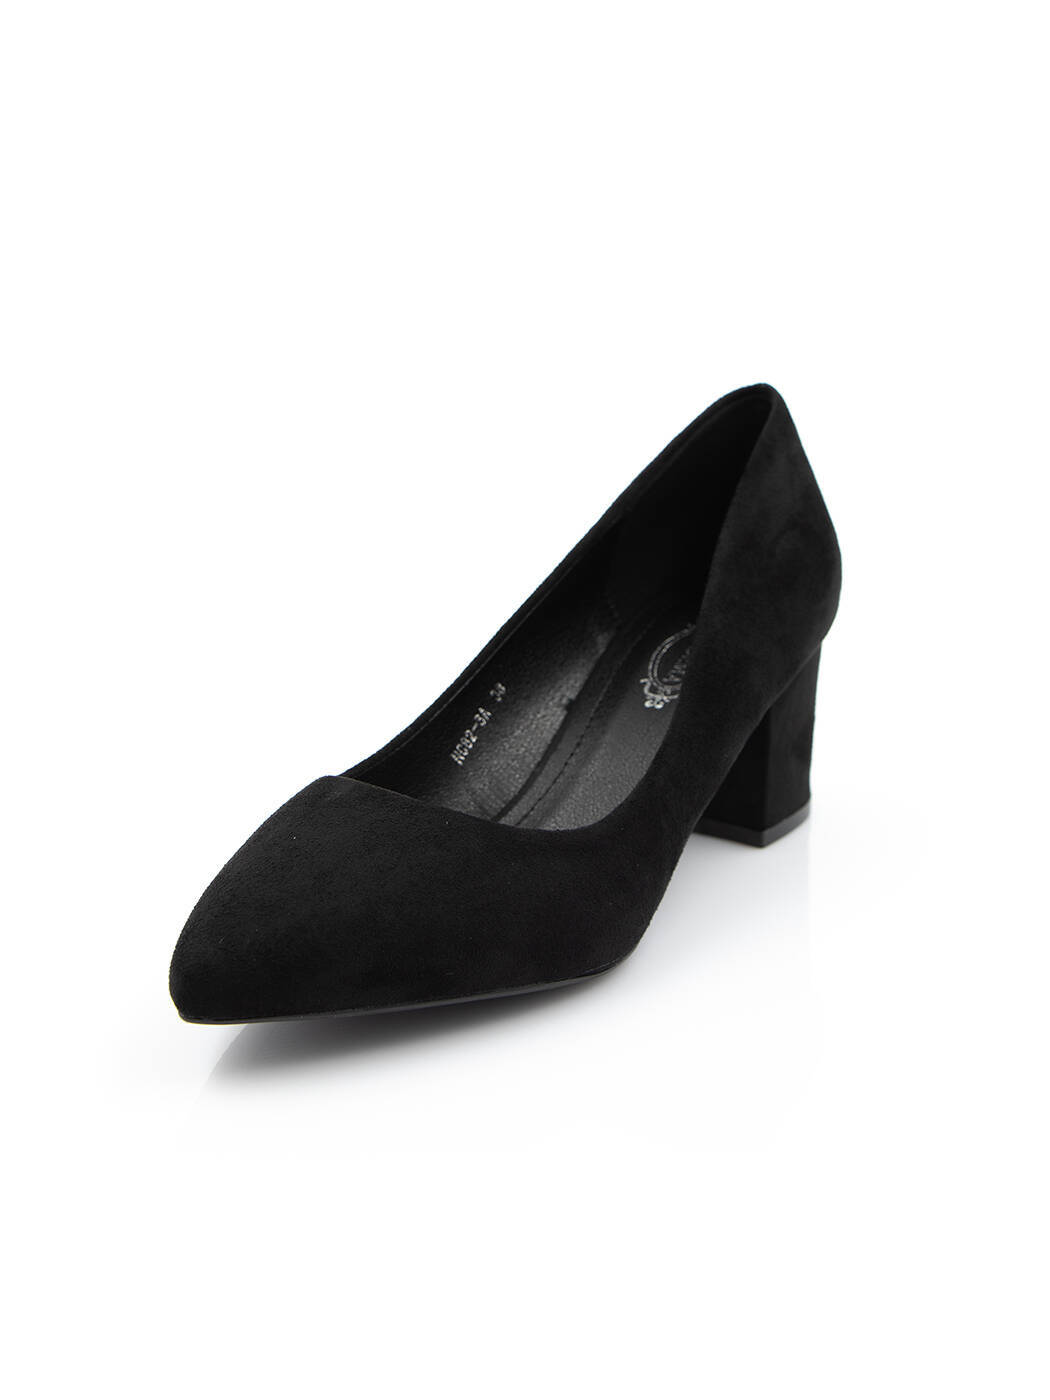 Туфли женские черные экозамша каблук устойчивый демисезон от производителя AM вид 0